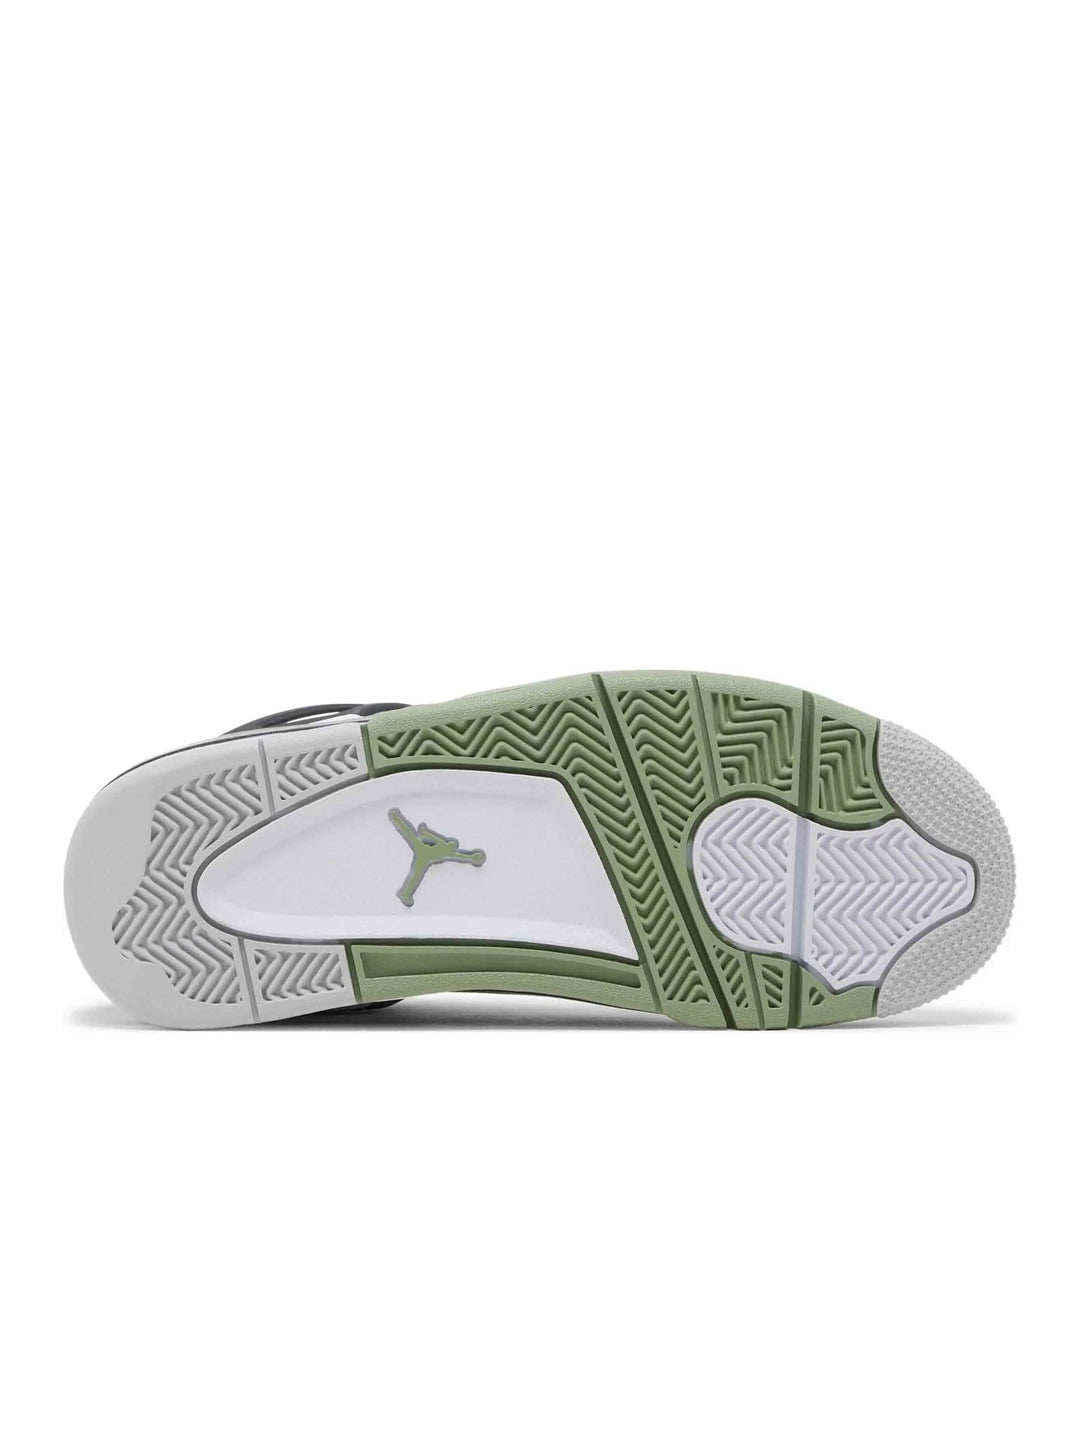 Nike Air Jordan 4 Retro Seafoam (W) Prior